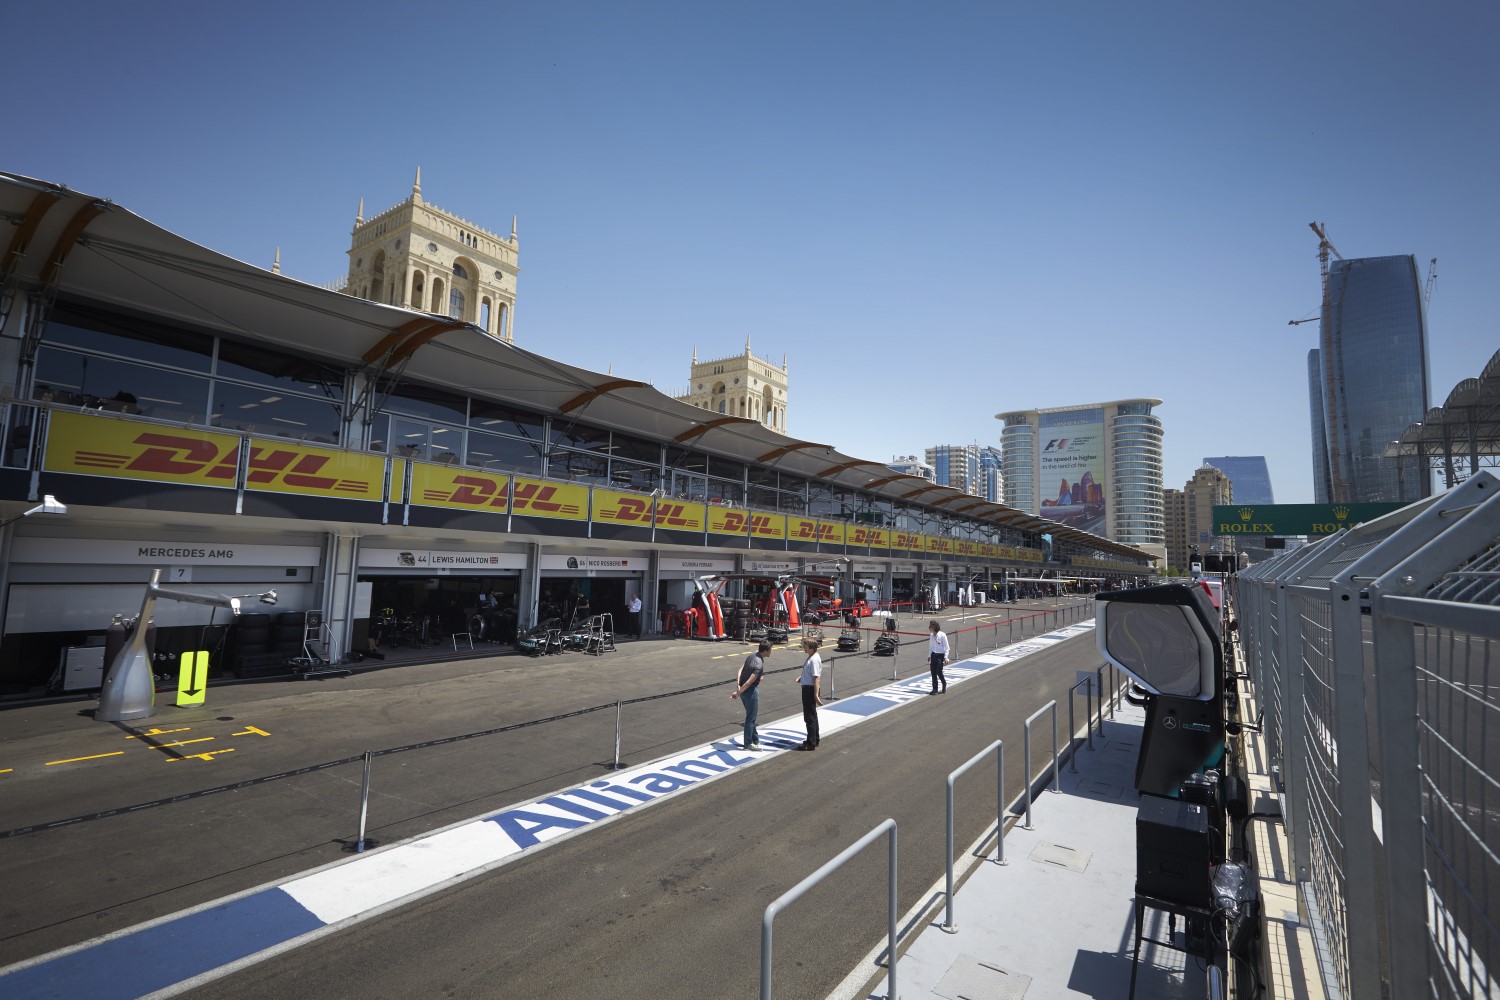 Azerbaijan Grand Prix pitlane